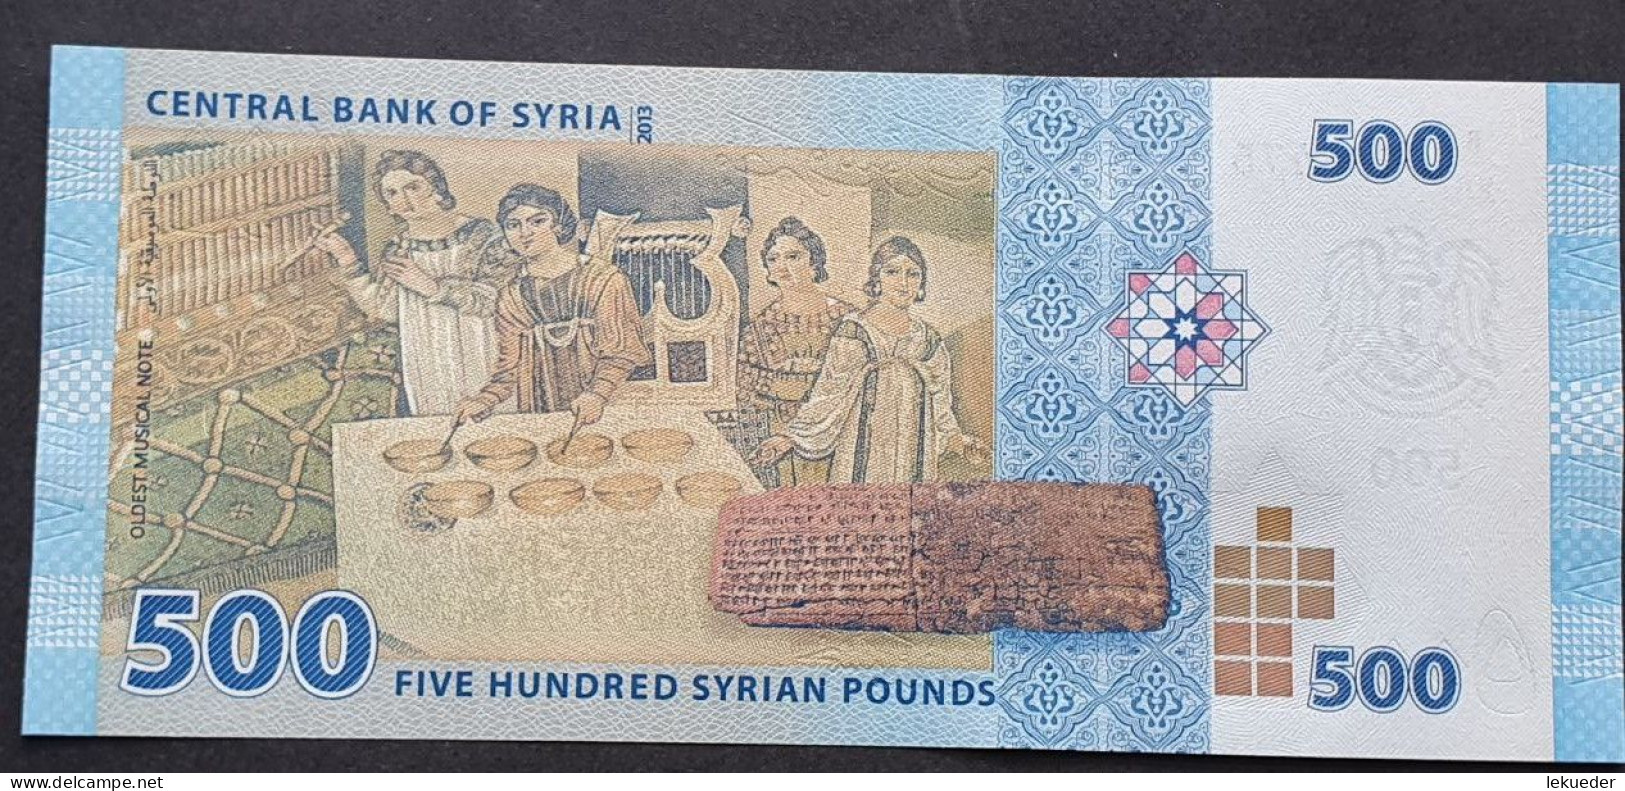 Billete De Banco De SIRIA - 500 Syrian Pounds, 2013  Sin Cursar - Syria